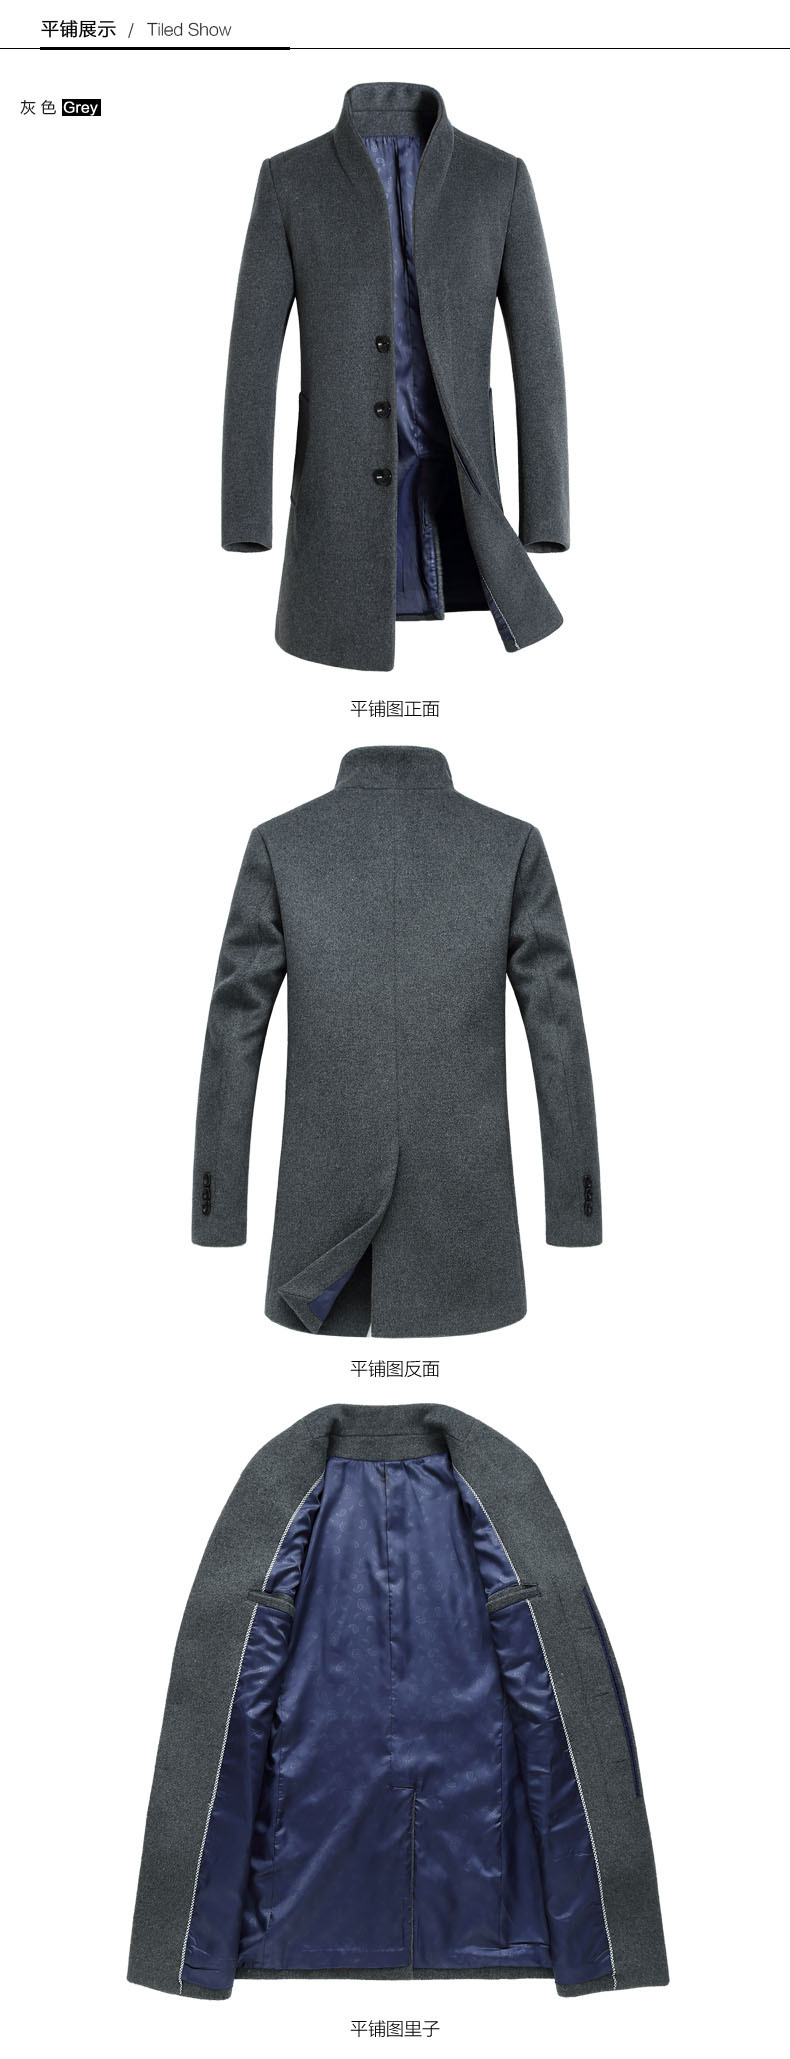 司奇隆秋冬新款男士羊毛呢大衣 中长款韩版修身呢大衣男毛呢